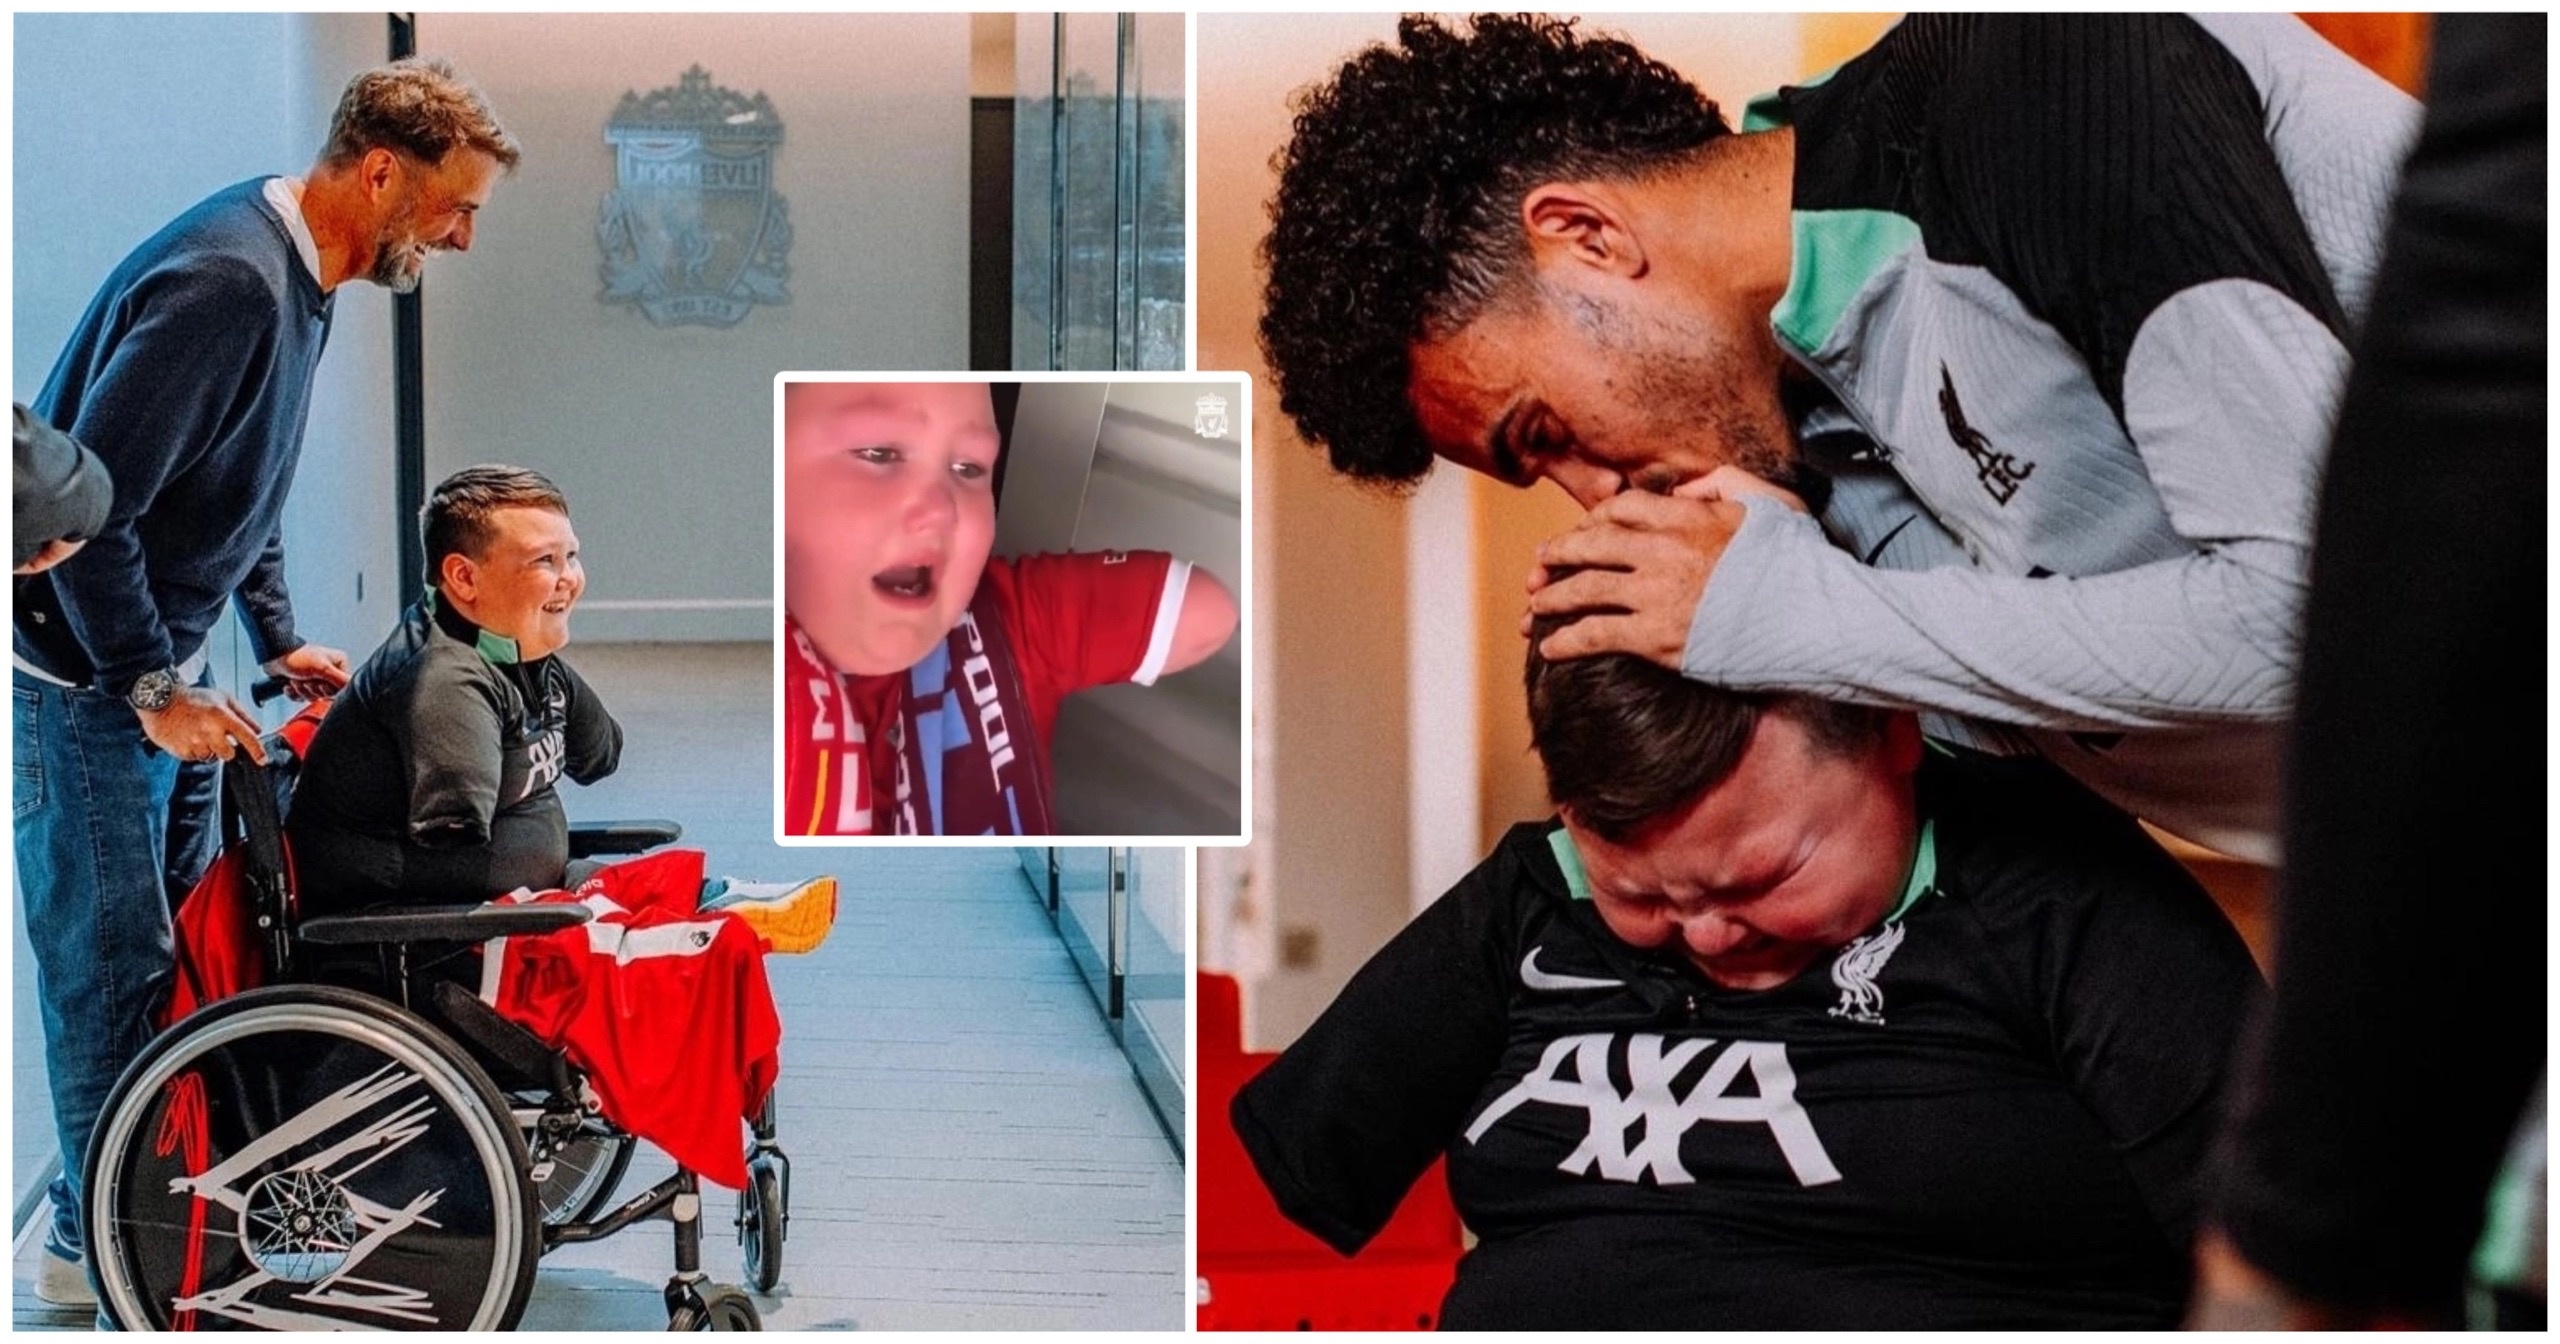 «Ливерпуль» устроил невероятный сюрприз для ребенка-инвалида. Парень называет «красных» смыслом своей жизни